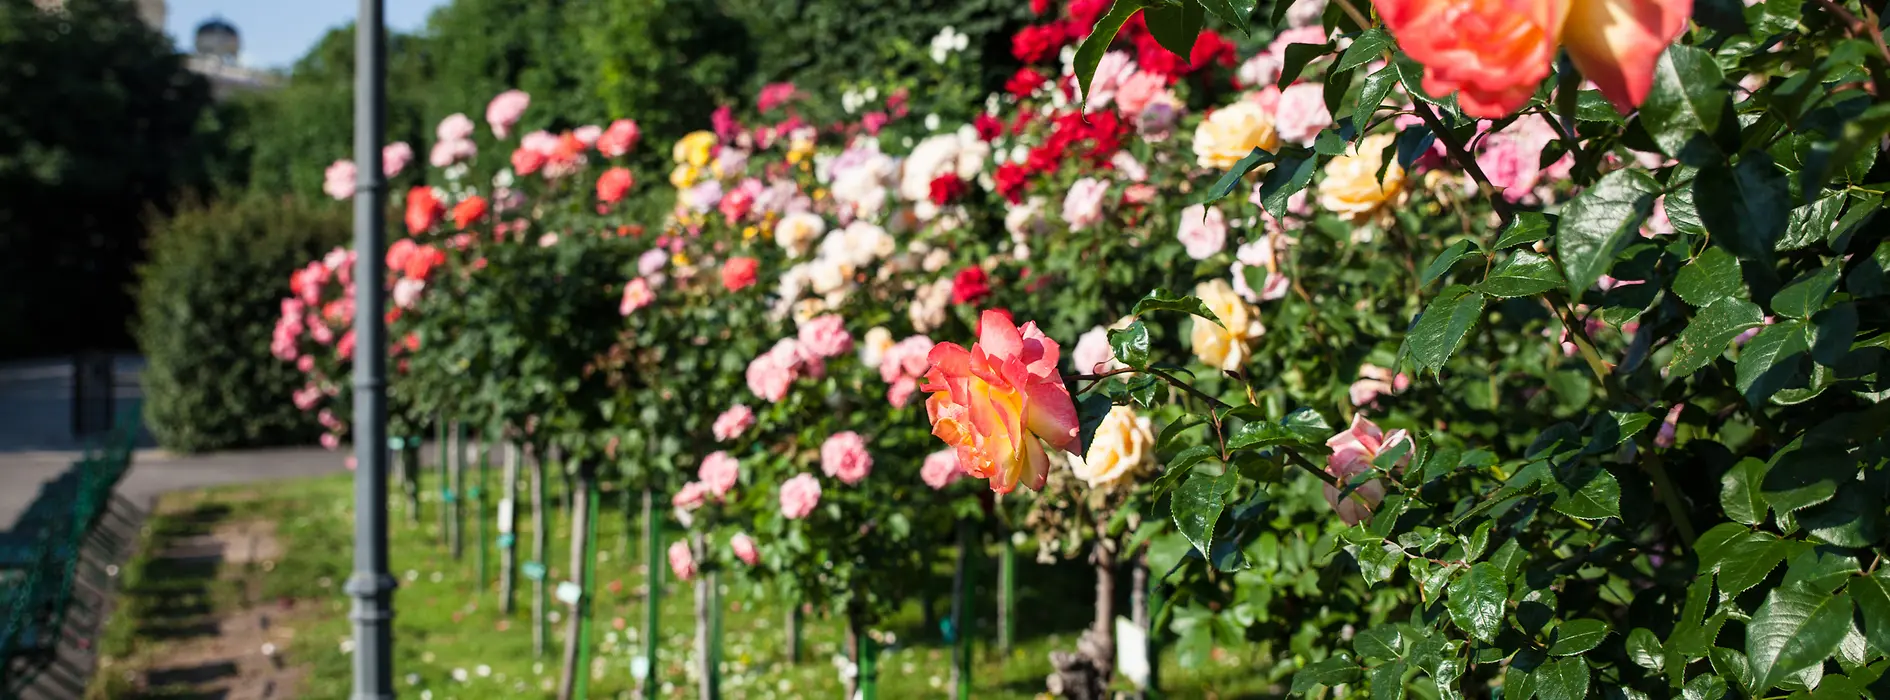 Розы в саду Фольксгартен